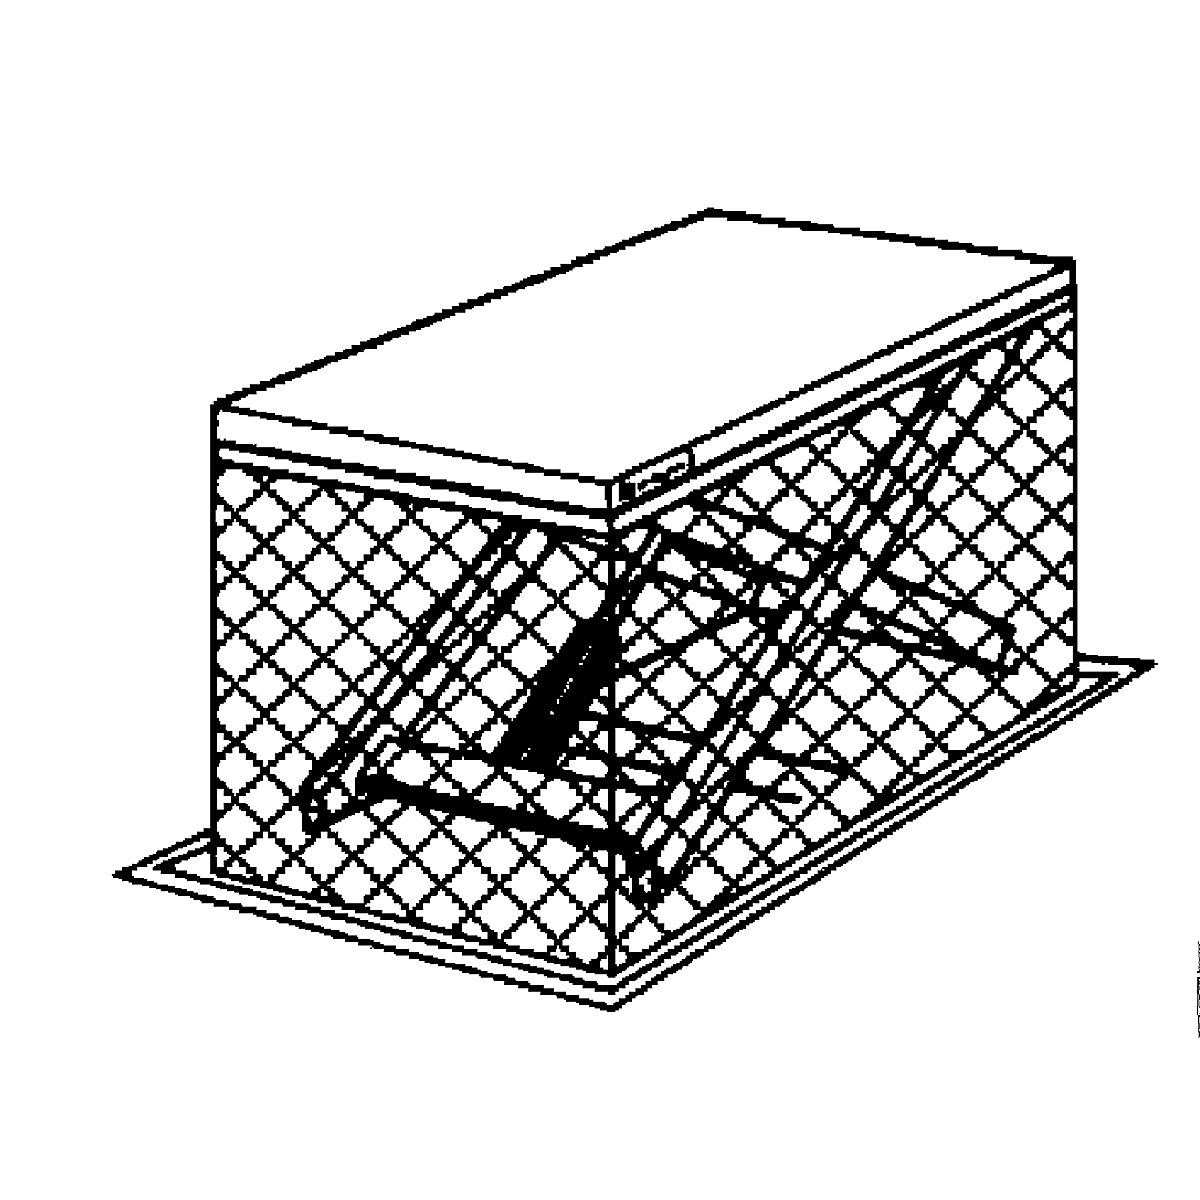 Kompaktowy stół podnośny – Edmolift (Zdjęcie produktu 7)-6